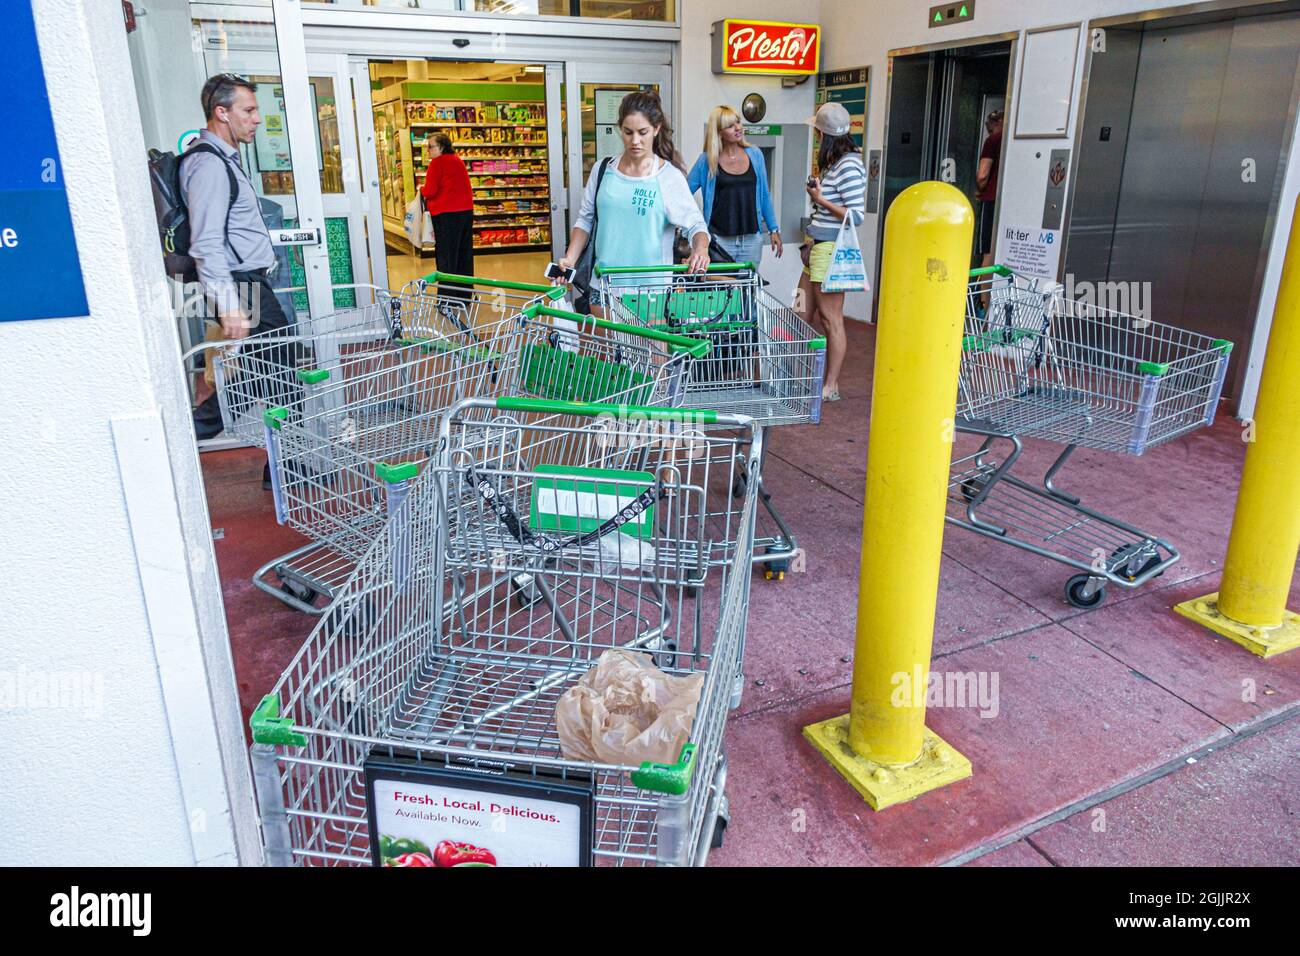 Miami Beach Florida, supermercato Publix negozio di alimentari, ingresso bloccato blocco incendio uscita sicurezza pericolo carrelli carrelli, Foto Stock